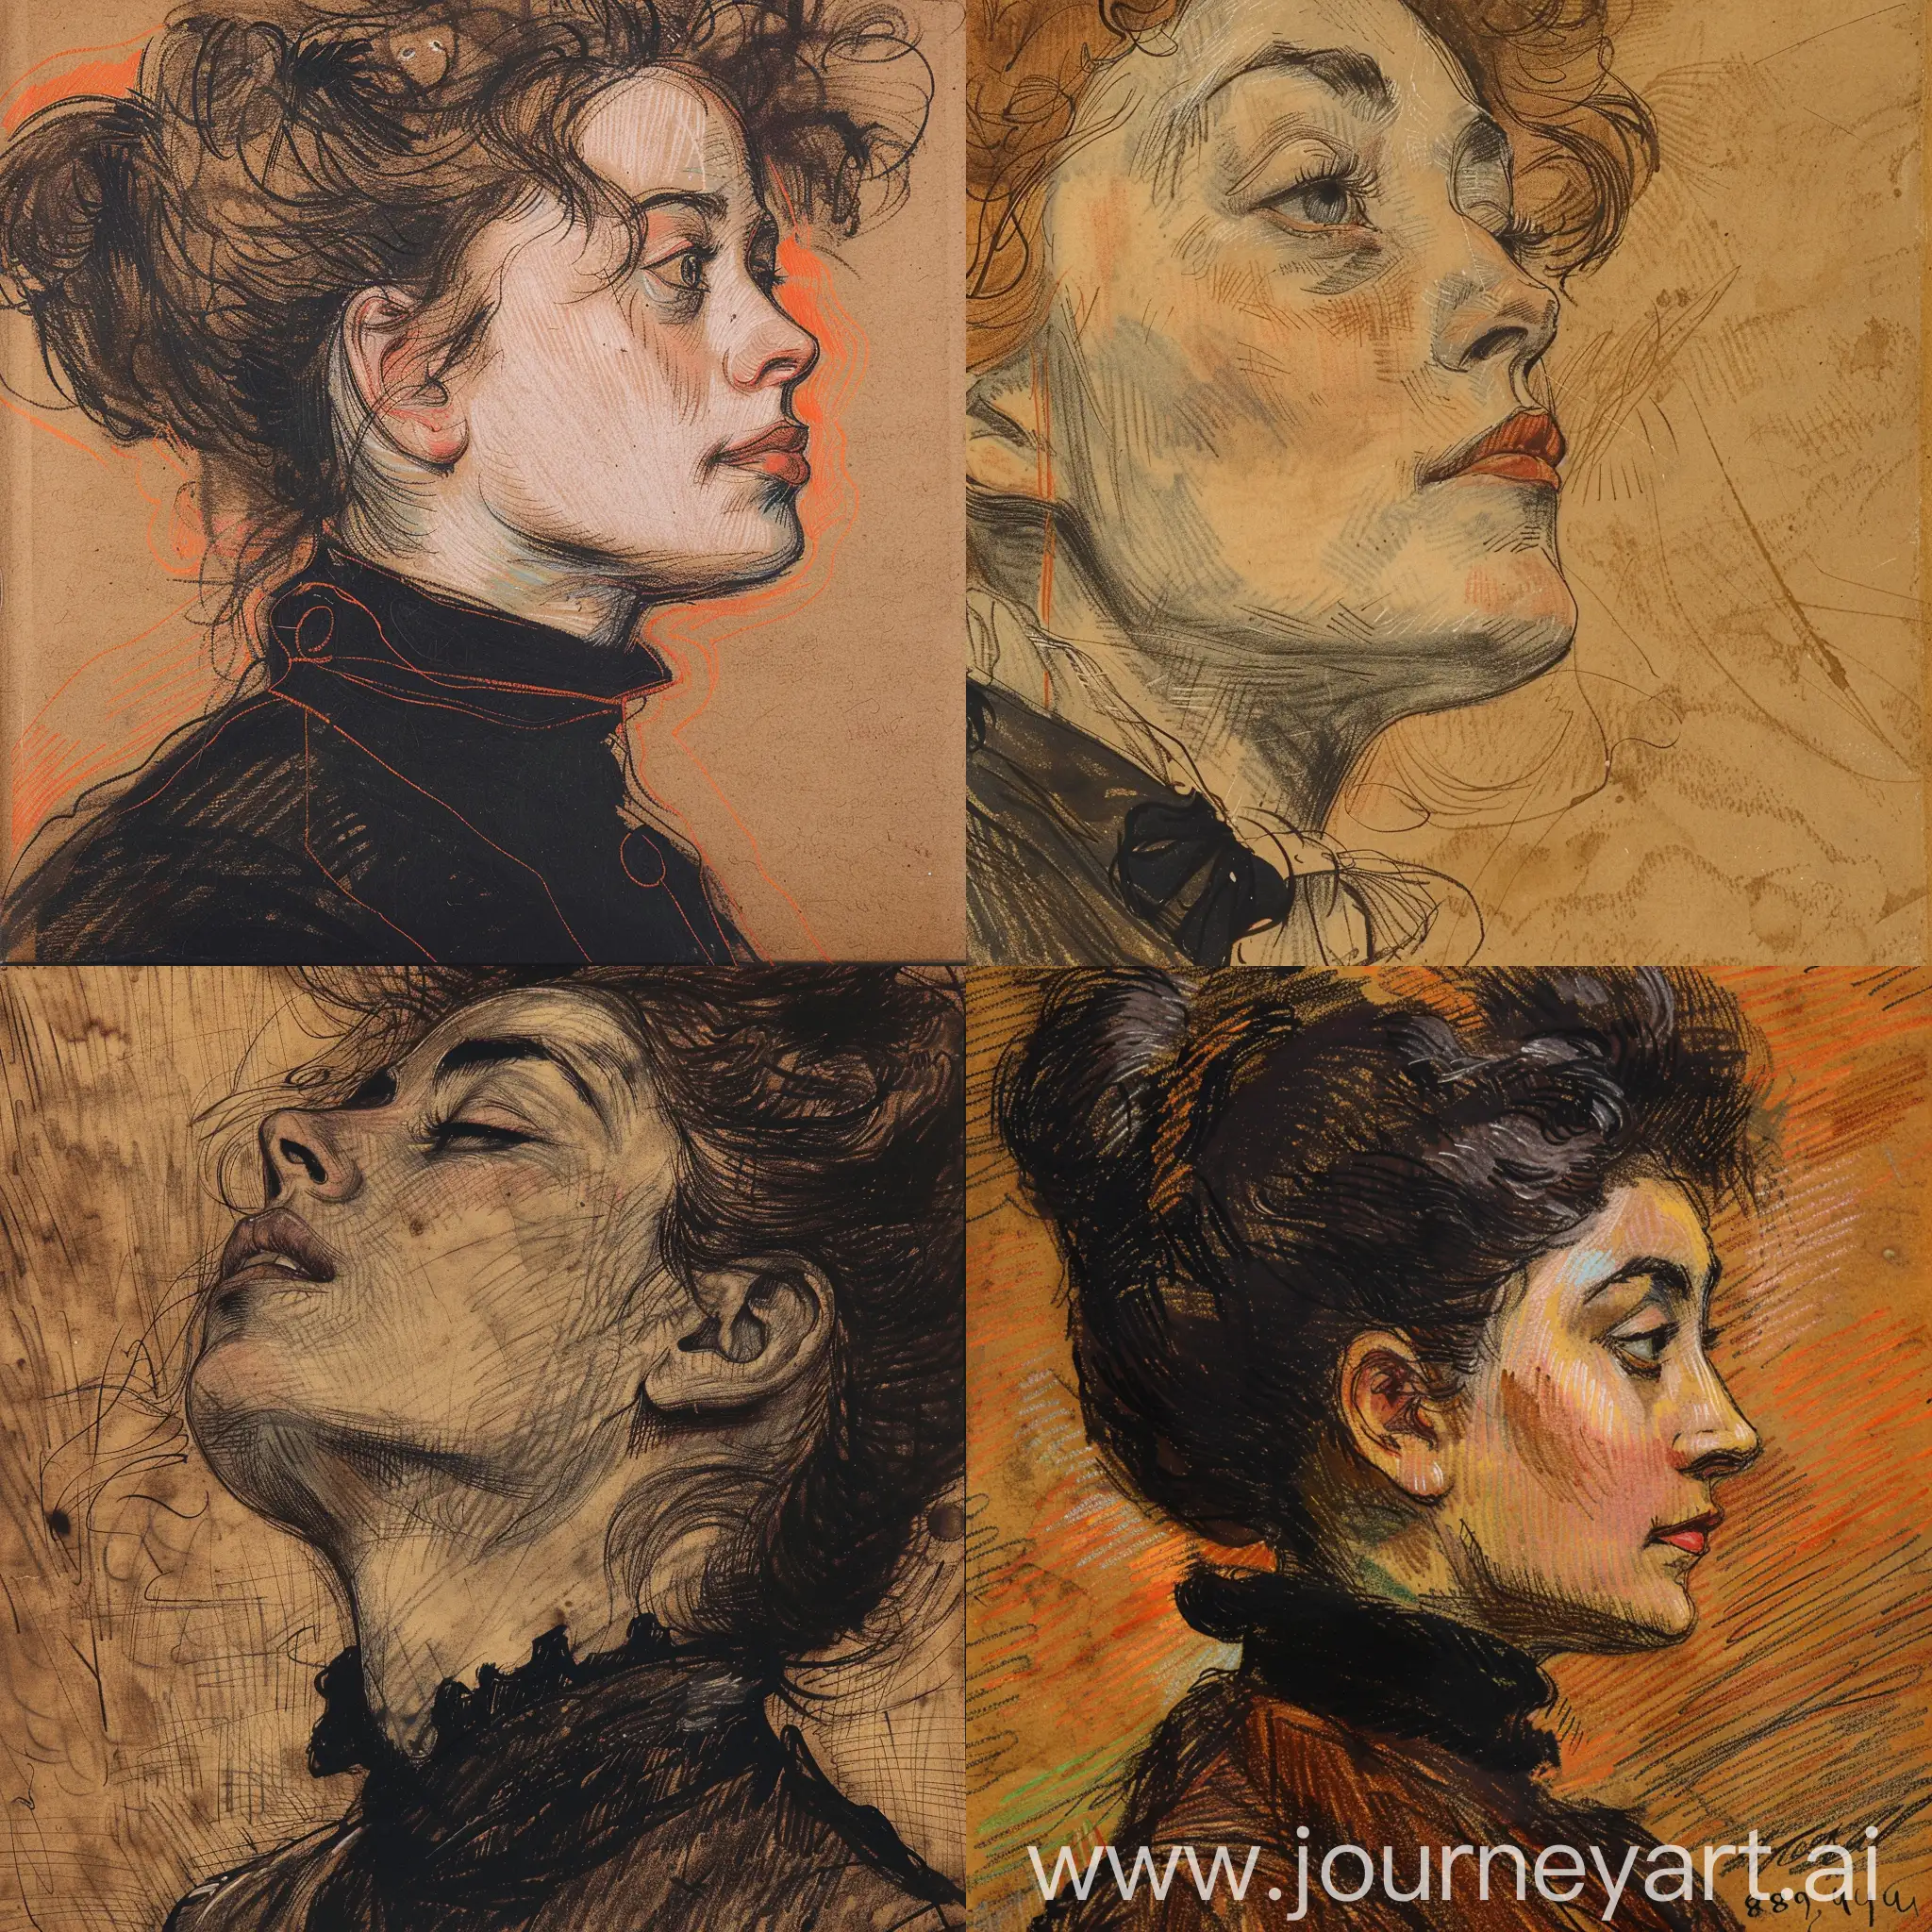 Rough-Closeup-Portrait-of-a-European-Woman-1889-Coal-Draft-by-Toulouse-Lautrec